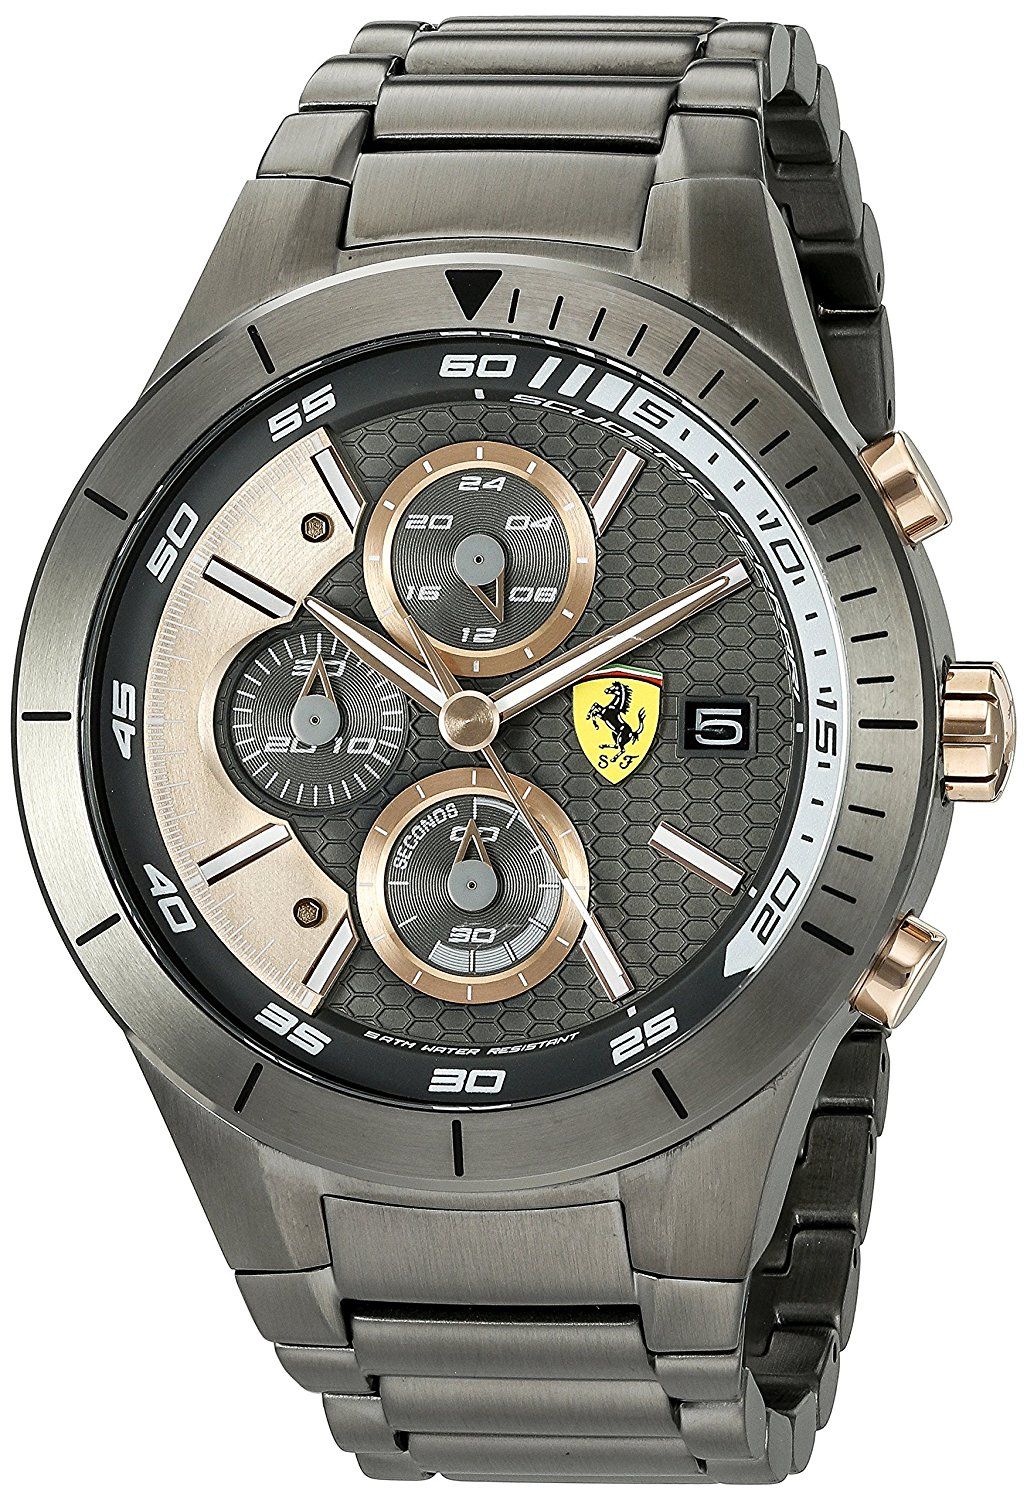 Ferrari Men's Quartz Resin Casual Watch, Color:Black (Model: 0830304)